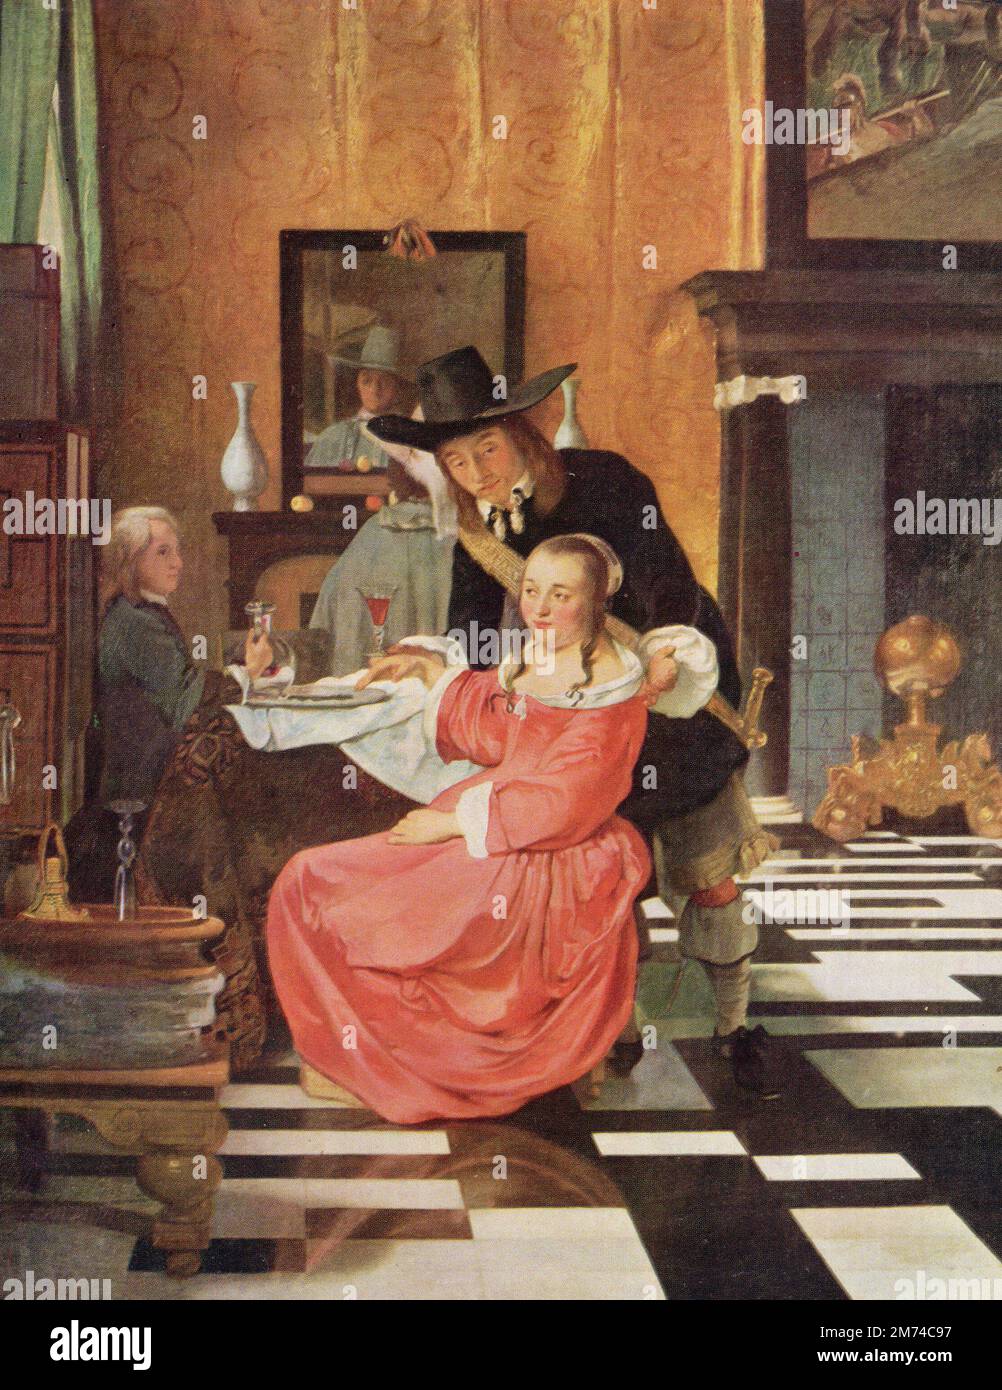 Rifiuto del vetro possibilmente da Ludolf de Jongh; petrolio su tela; scuola olandese; 17th ° secolo. Il dipinto è stato attribuito anche a Hendrik Van Der Burch. Foto Stock